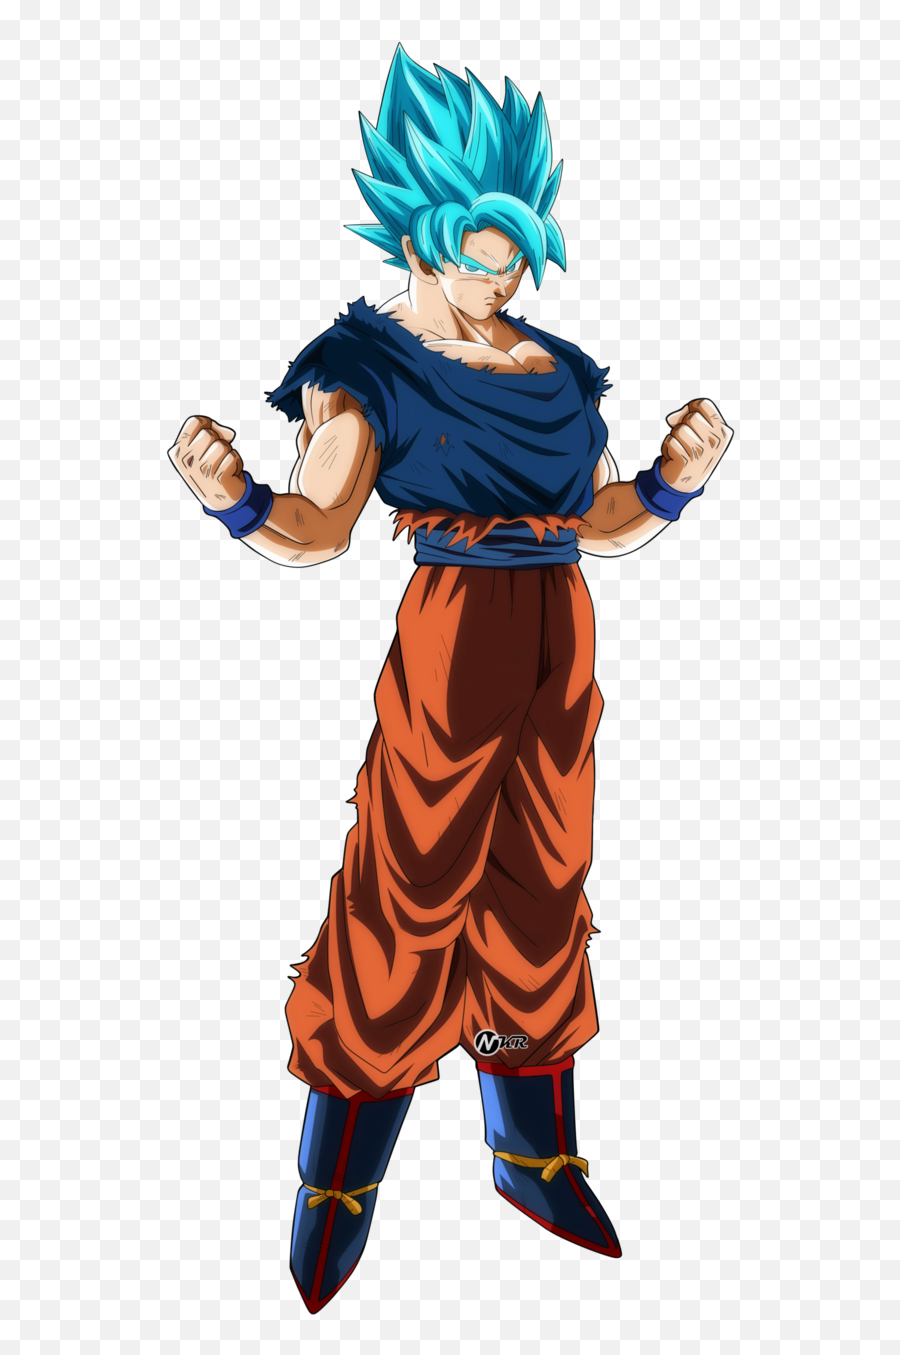 Hd Png Image With Transparent - Kaioken Goku Ssj Blue,Goku Transparent